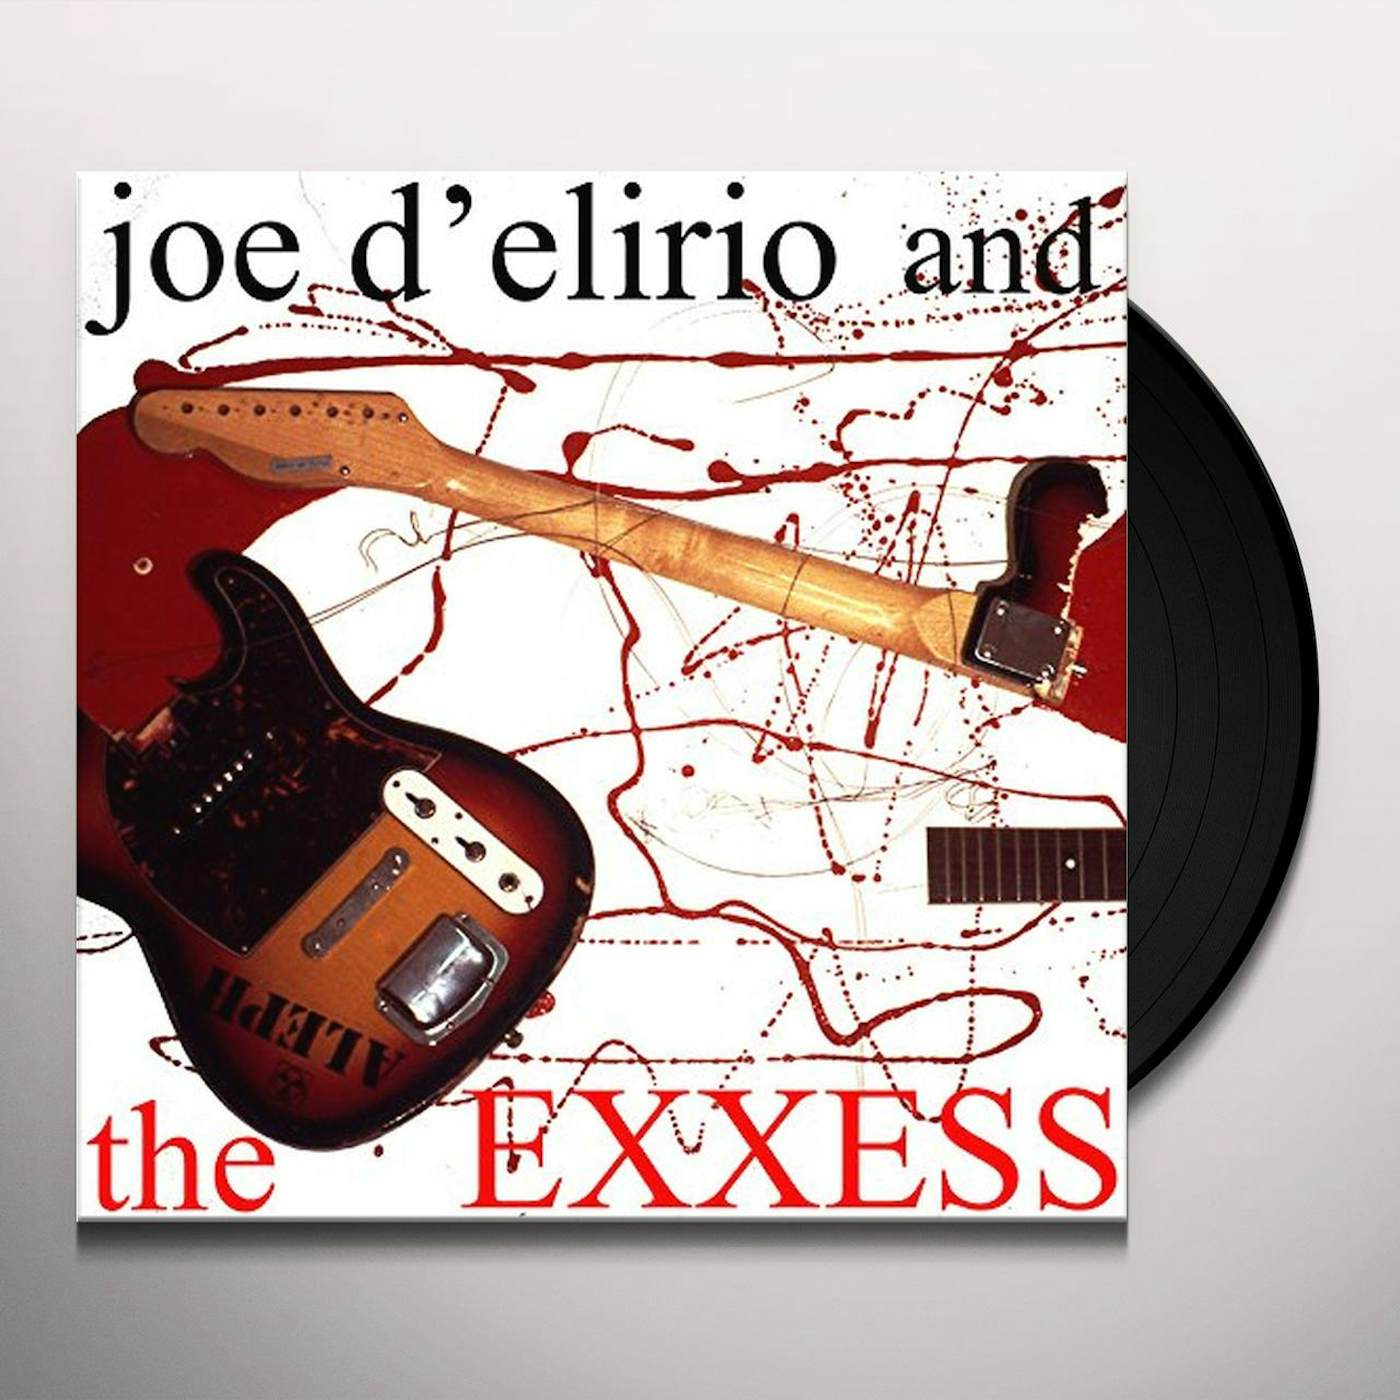 JOE D'ELIRIO & THE EXXESS Vinyl Record